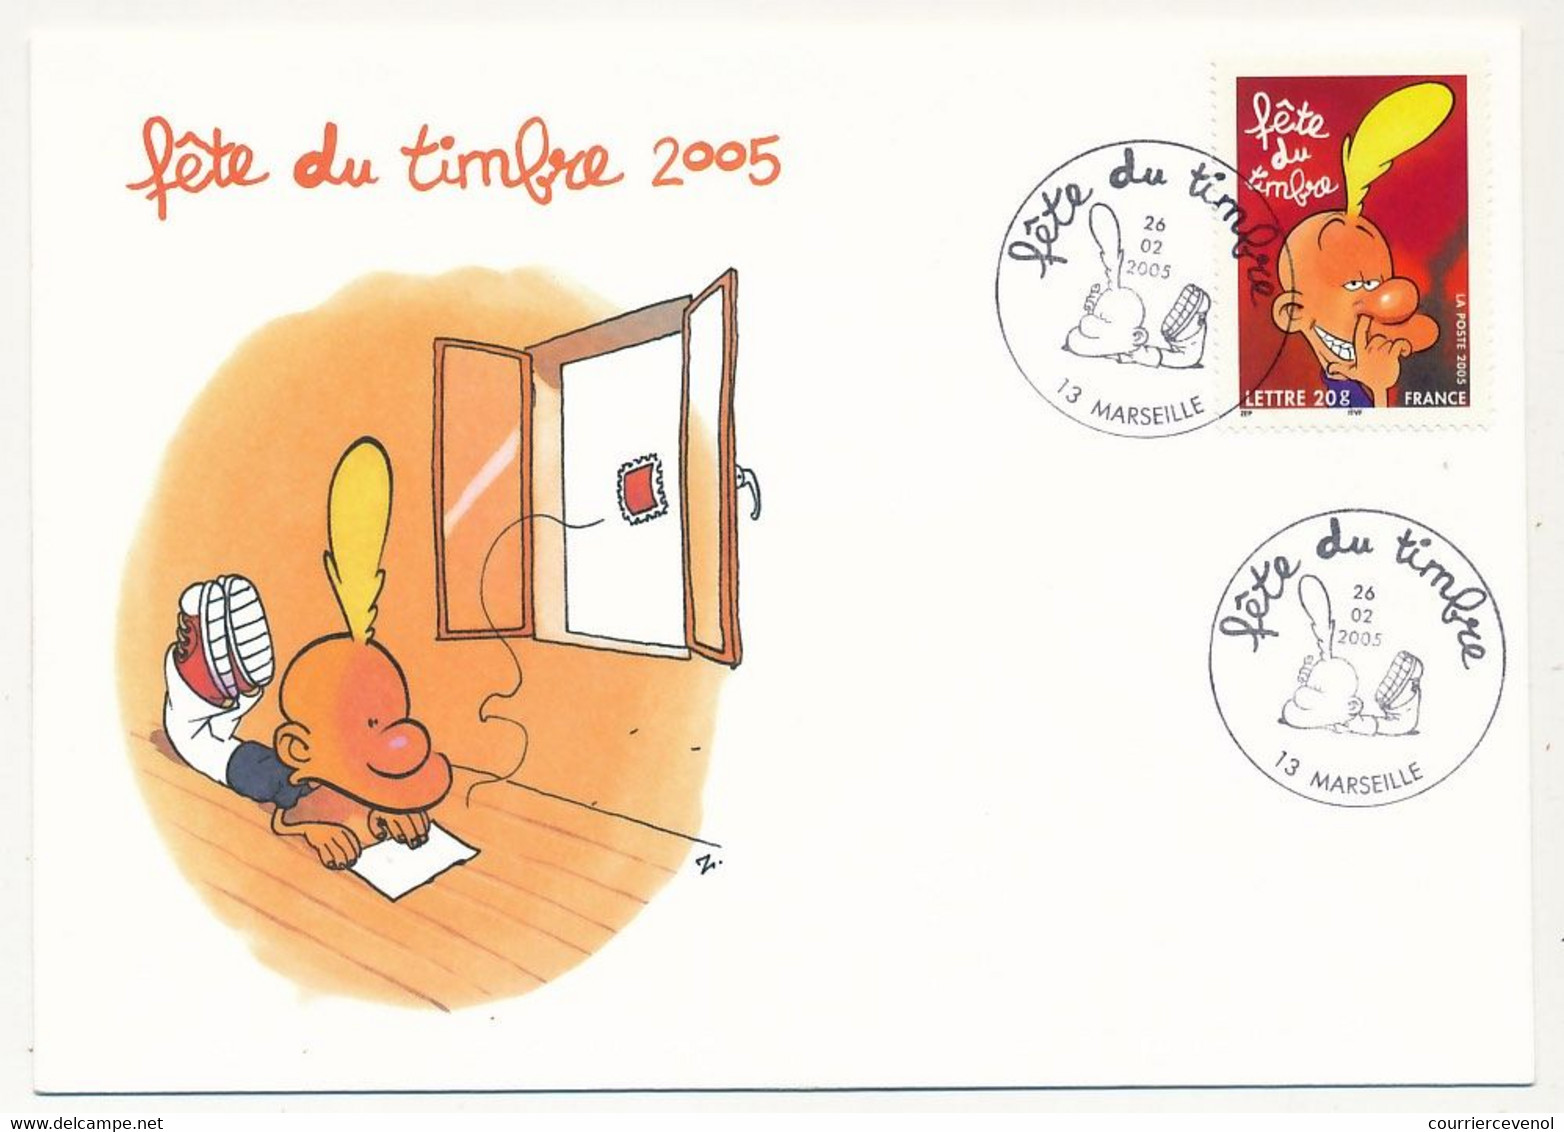 France - 2 Enveloppes Fédérales - Fête Du Timbre 2005 - TITEUF - Oblit. 13 MARSEILLE - 26.02.2005 - Cartas & Documentos